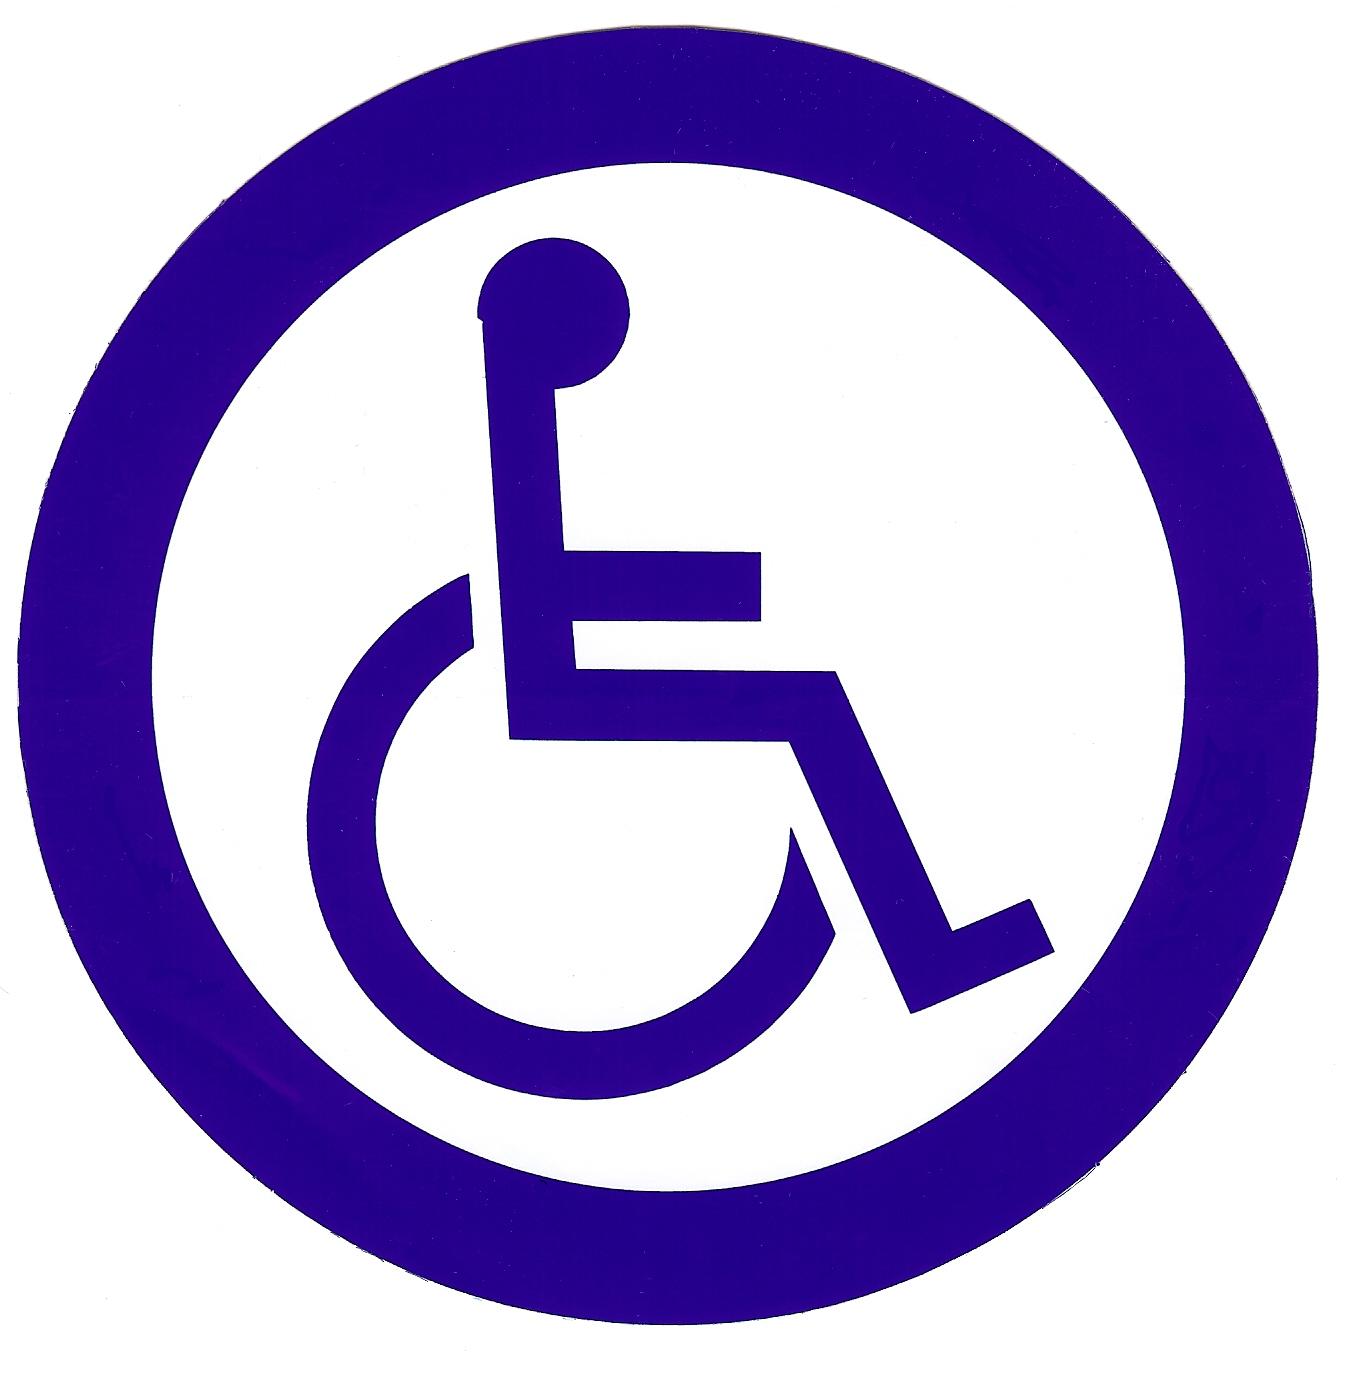 Automatic Door Handicap Logo Decal in New York, Long Island